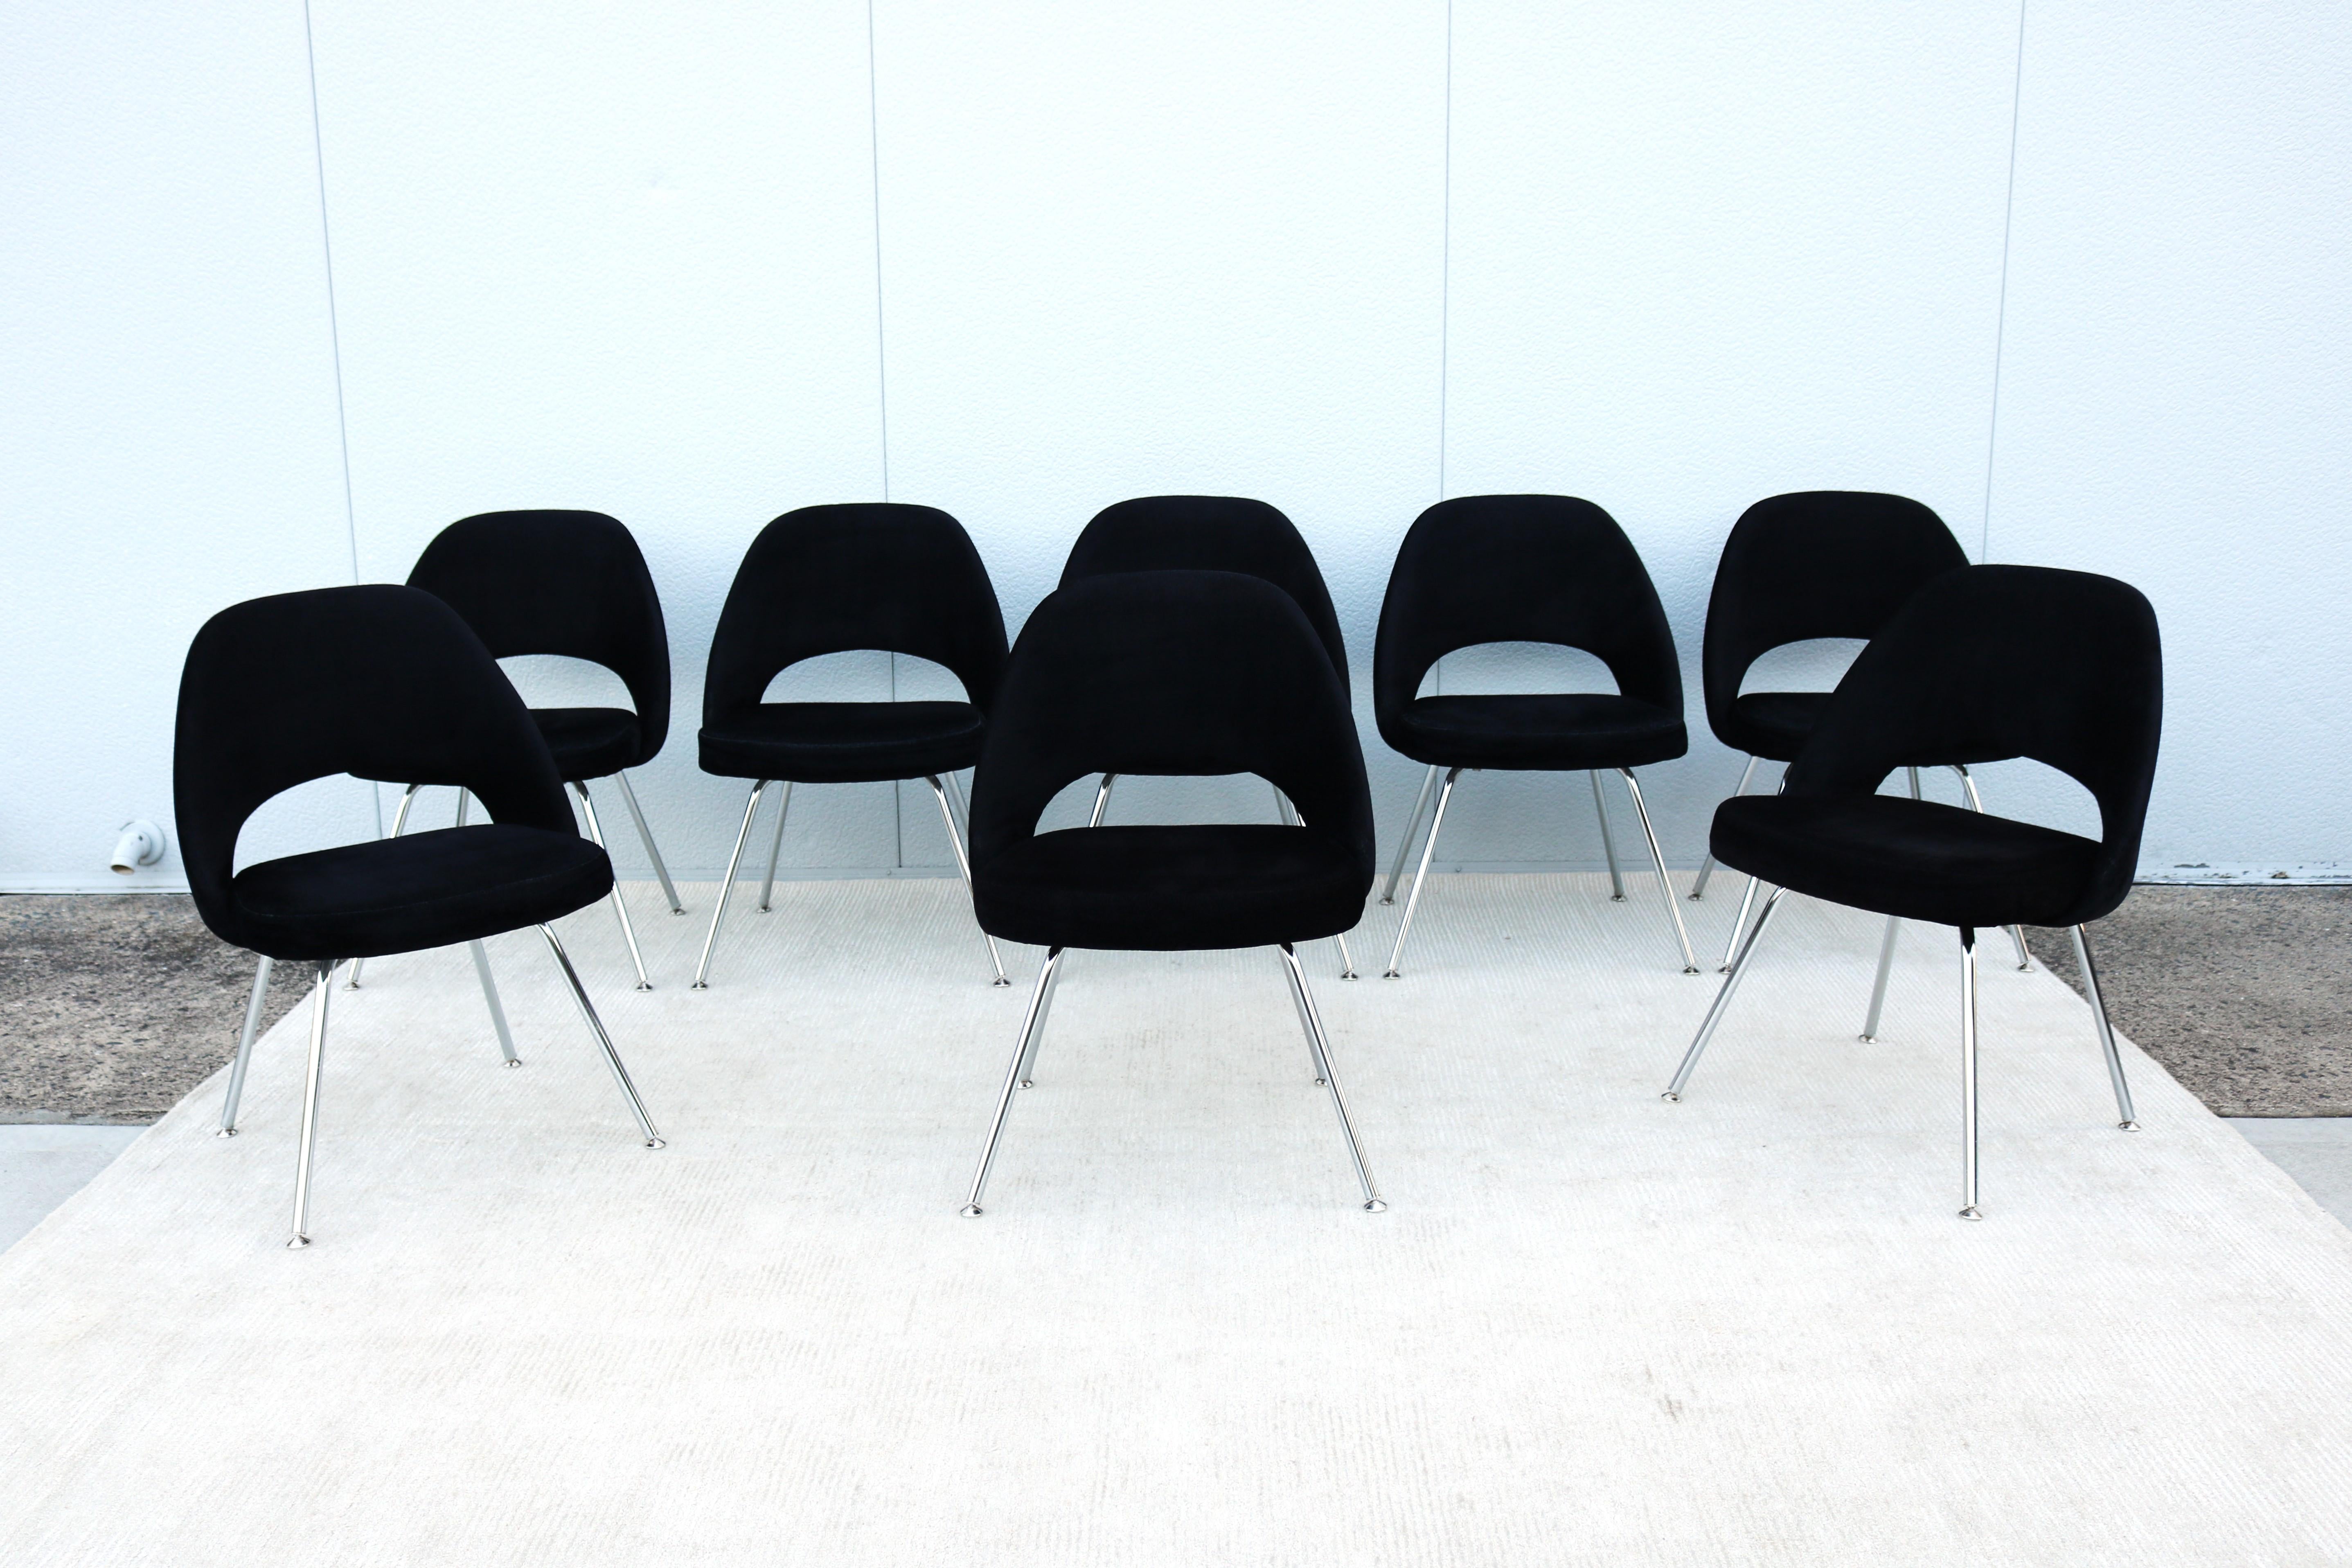 Atemberaubende authentische Mitte des Jahrhunderts moderne Satz von acht Saarinen Executive armless Stühle von Knoll.
Einer der beliebtesten Entwürfe von Knoll, der durch die Form seiner Schale höchsten Komfort bietet.
Er wurde 1950 eingeführt und